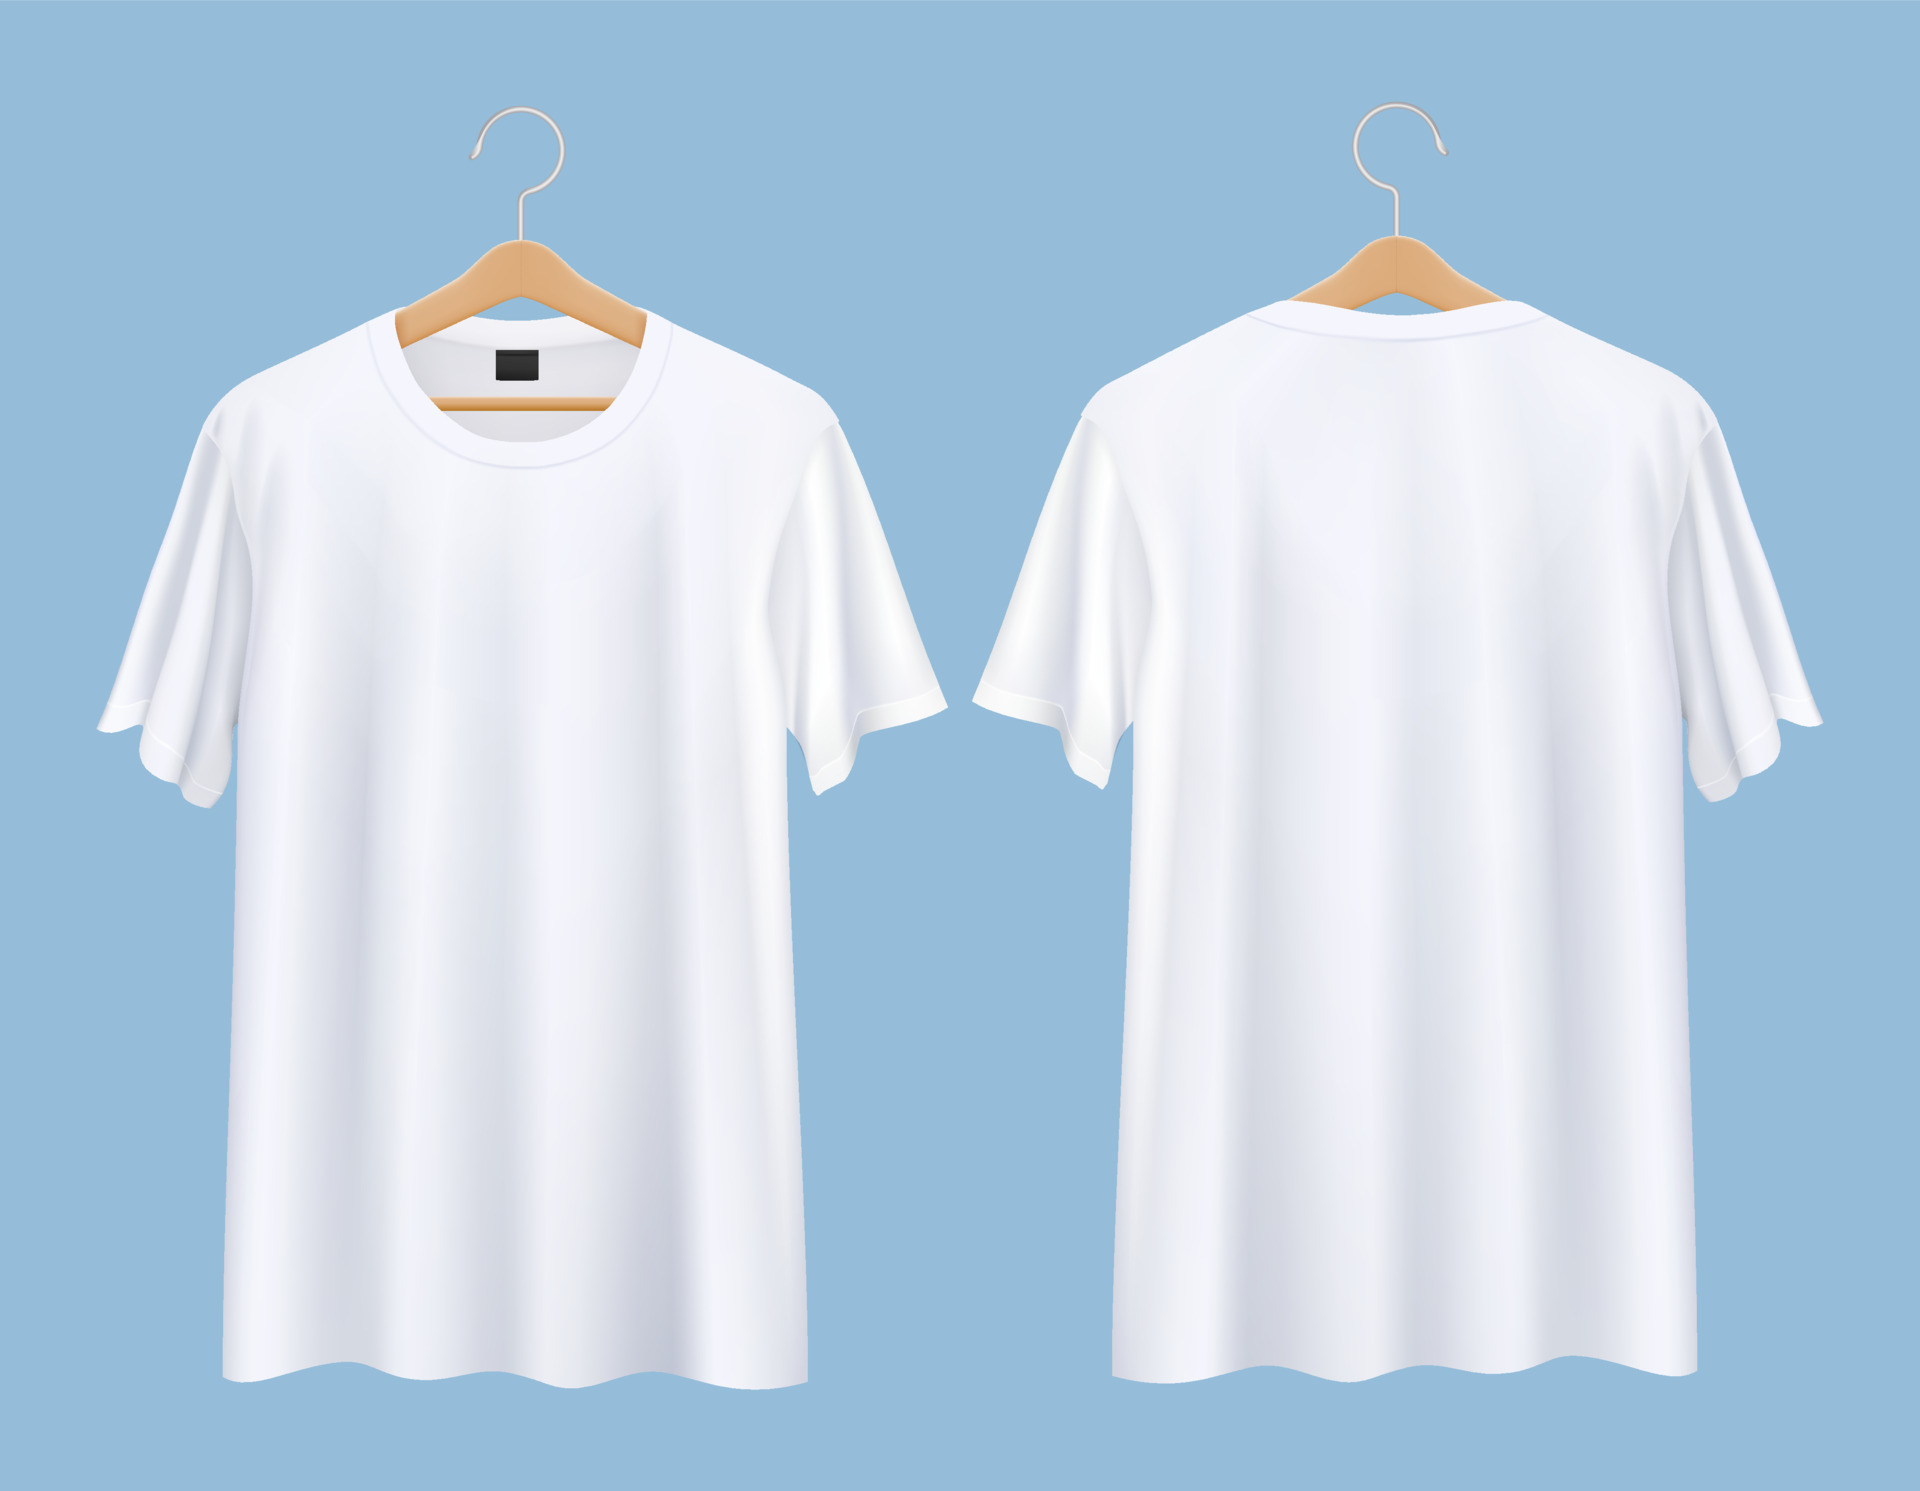 t-shirt com ilustrações de maquete de cabide frente e costas